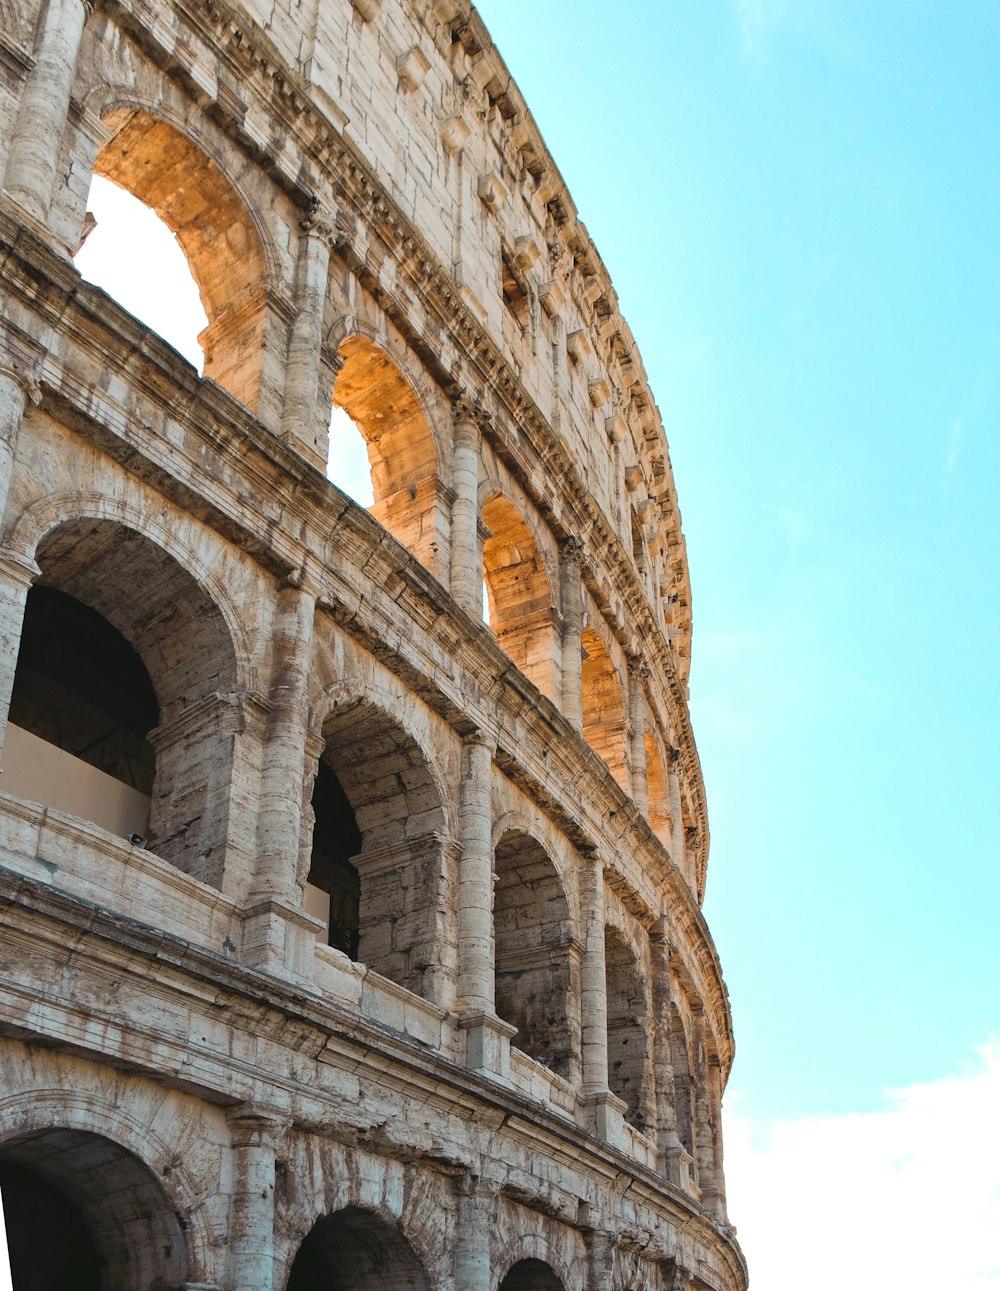 Fotografía de ángulo bajo del Coliseo durante el día